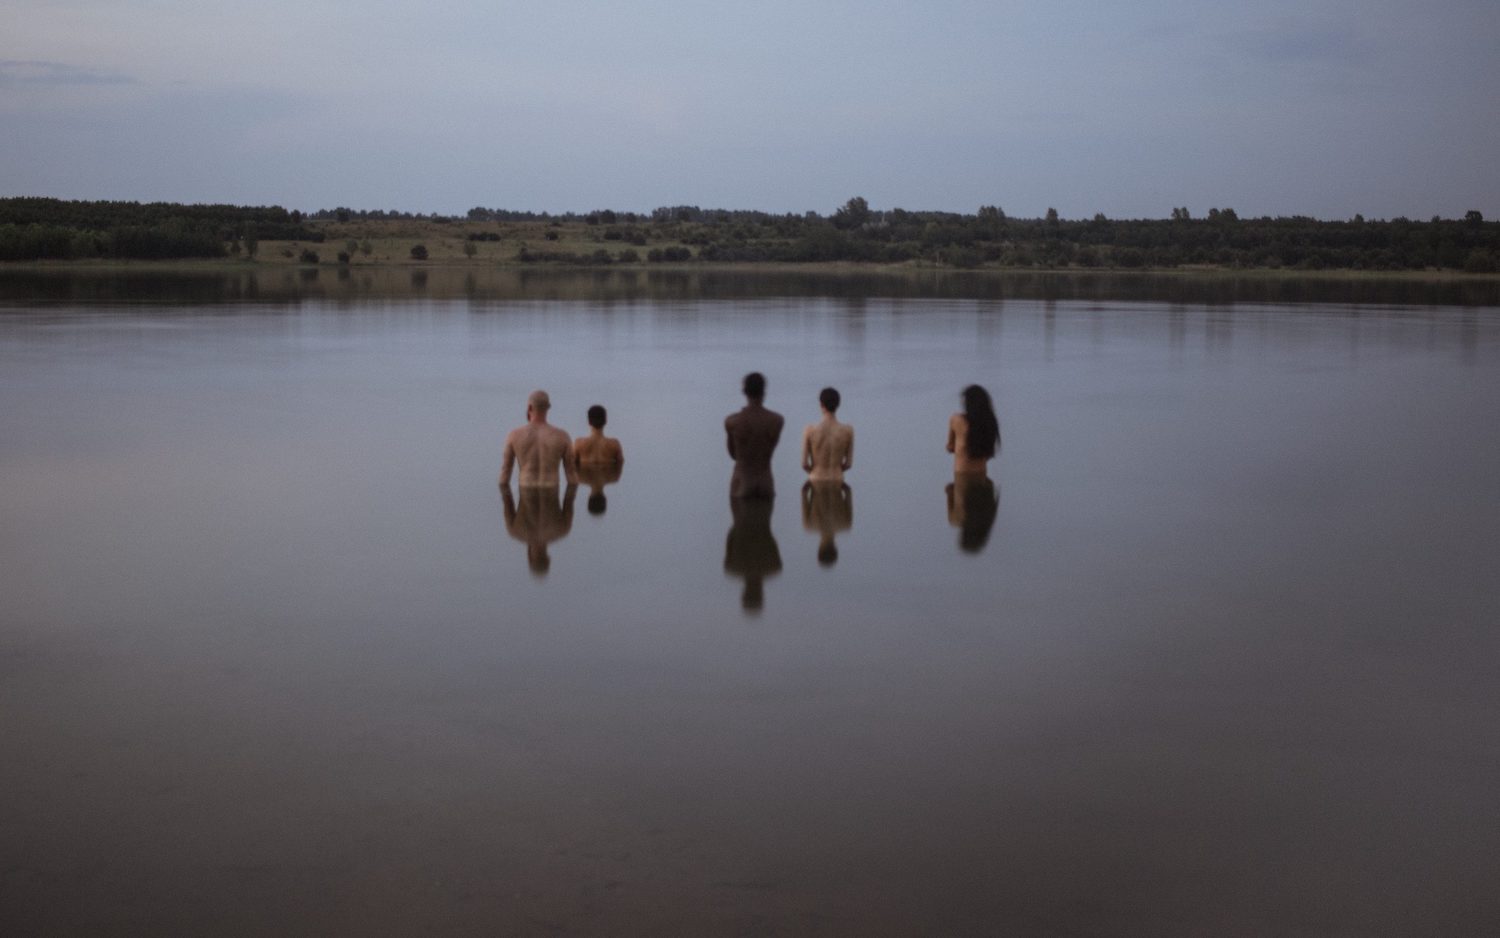 Fünf Personen stehen nackt im Wasser. Sie sind von hinten zu sehen.